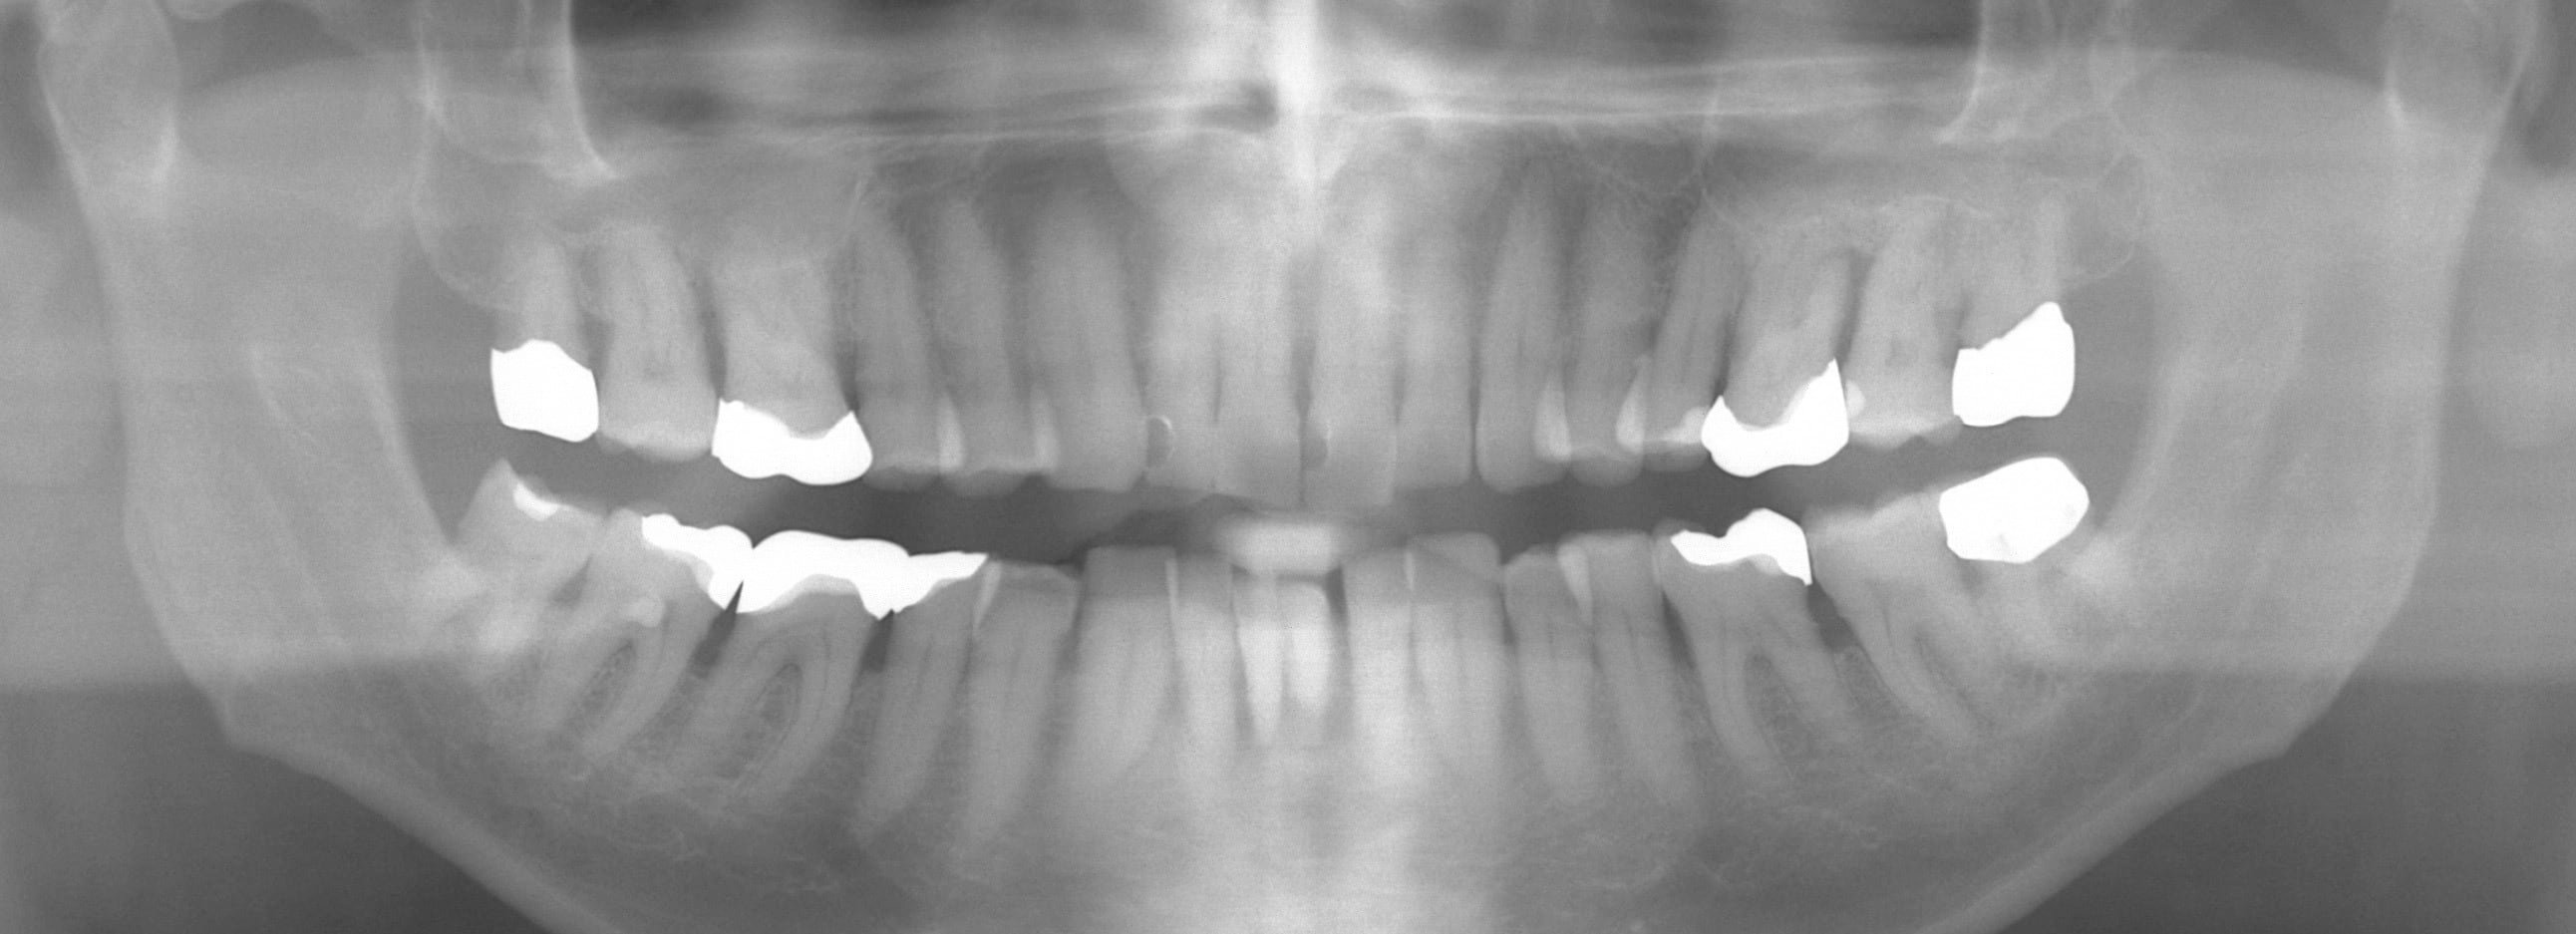 左側上顎第1大臼歯と下顎切歯領域の垂直性欠損を伴う歯周炎による骨吸収を示す